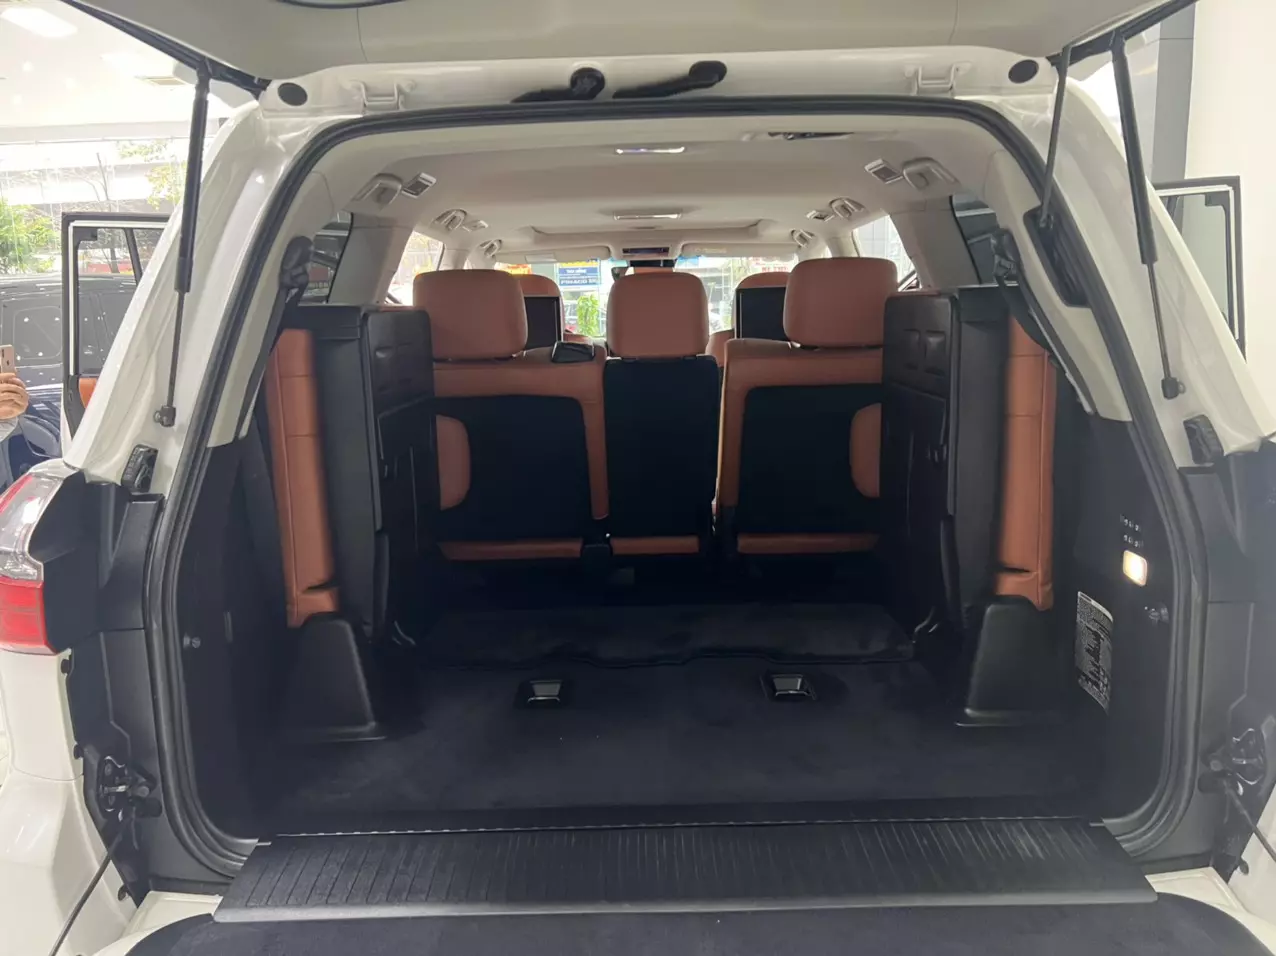 Bán Lexus LX570 Trung Đông sản xuất năm 2016 màu Trắng nội thất Nâu da bò, xe đăng ký tên cá nhân đi hơn 10v Km-7